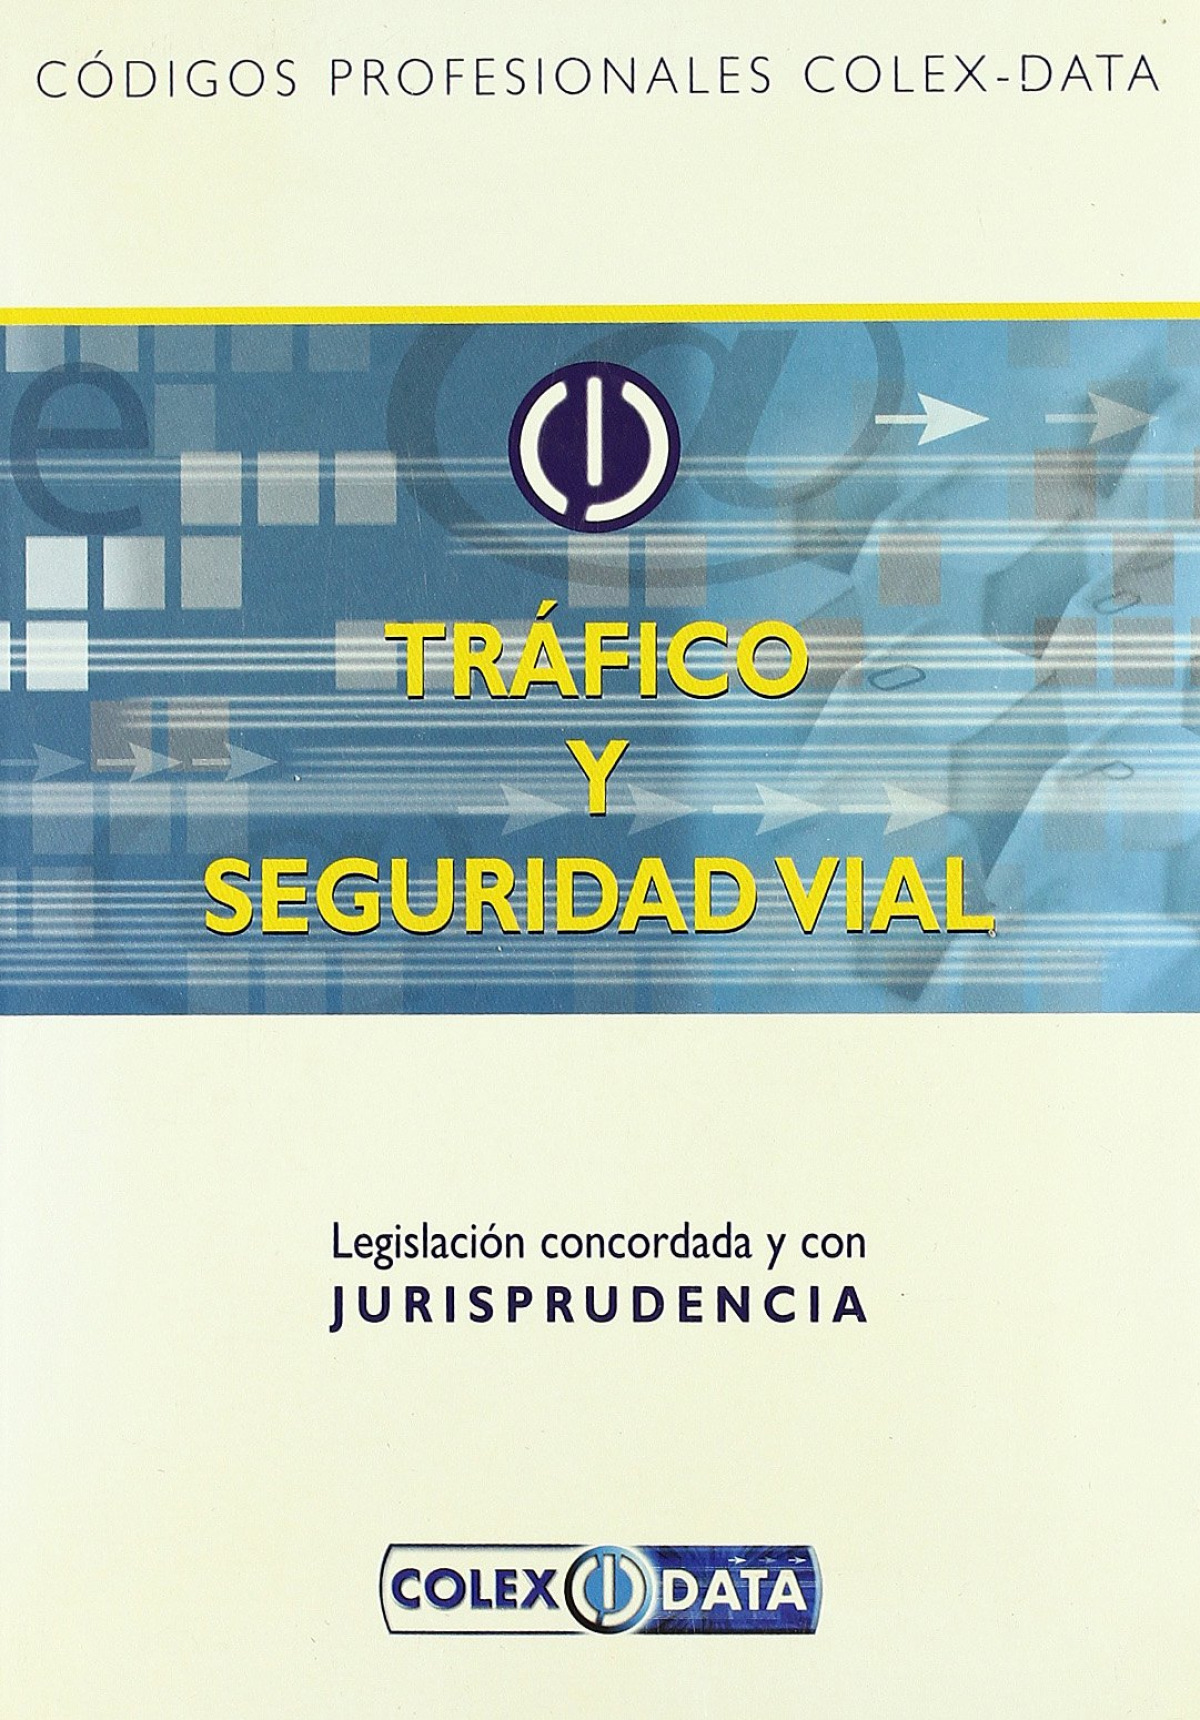 Trafico y seguridad vial (codigos profesionales colex-data) legislacion concordada y con jurisprudencia - Vvaa